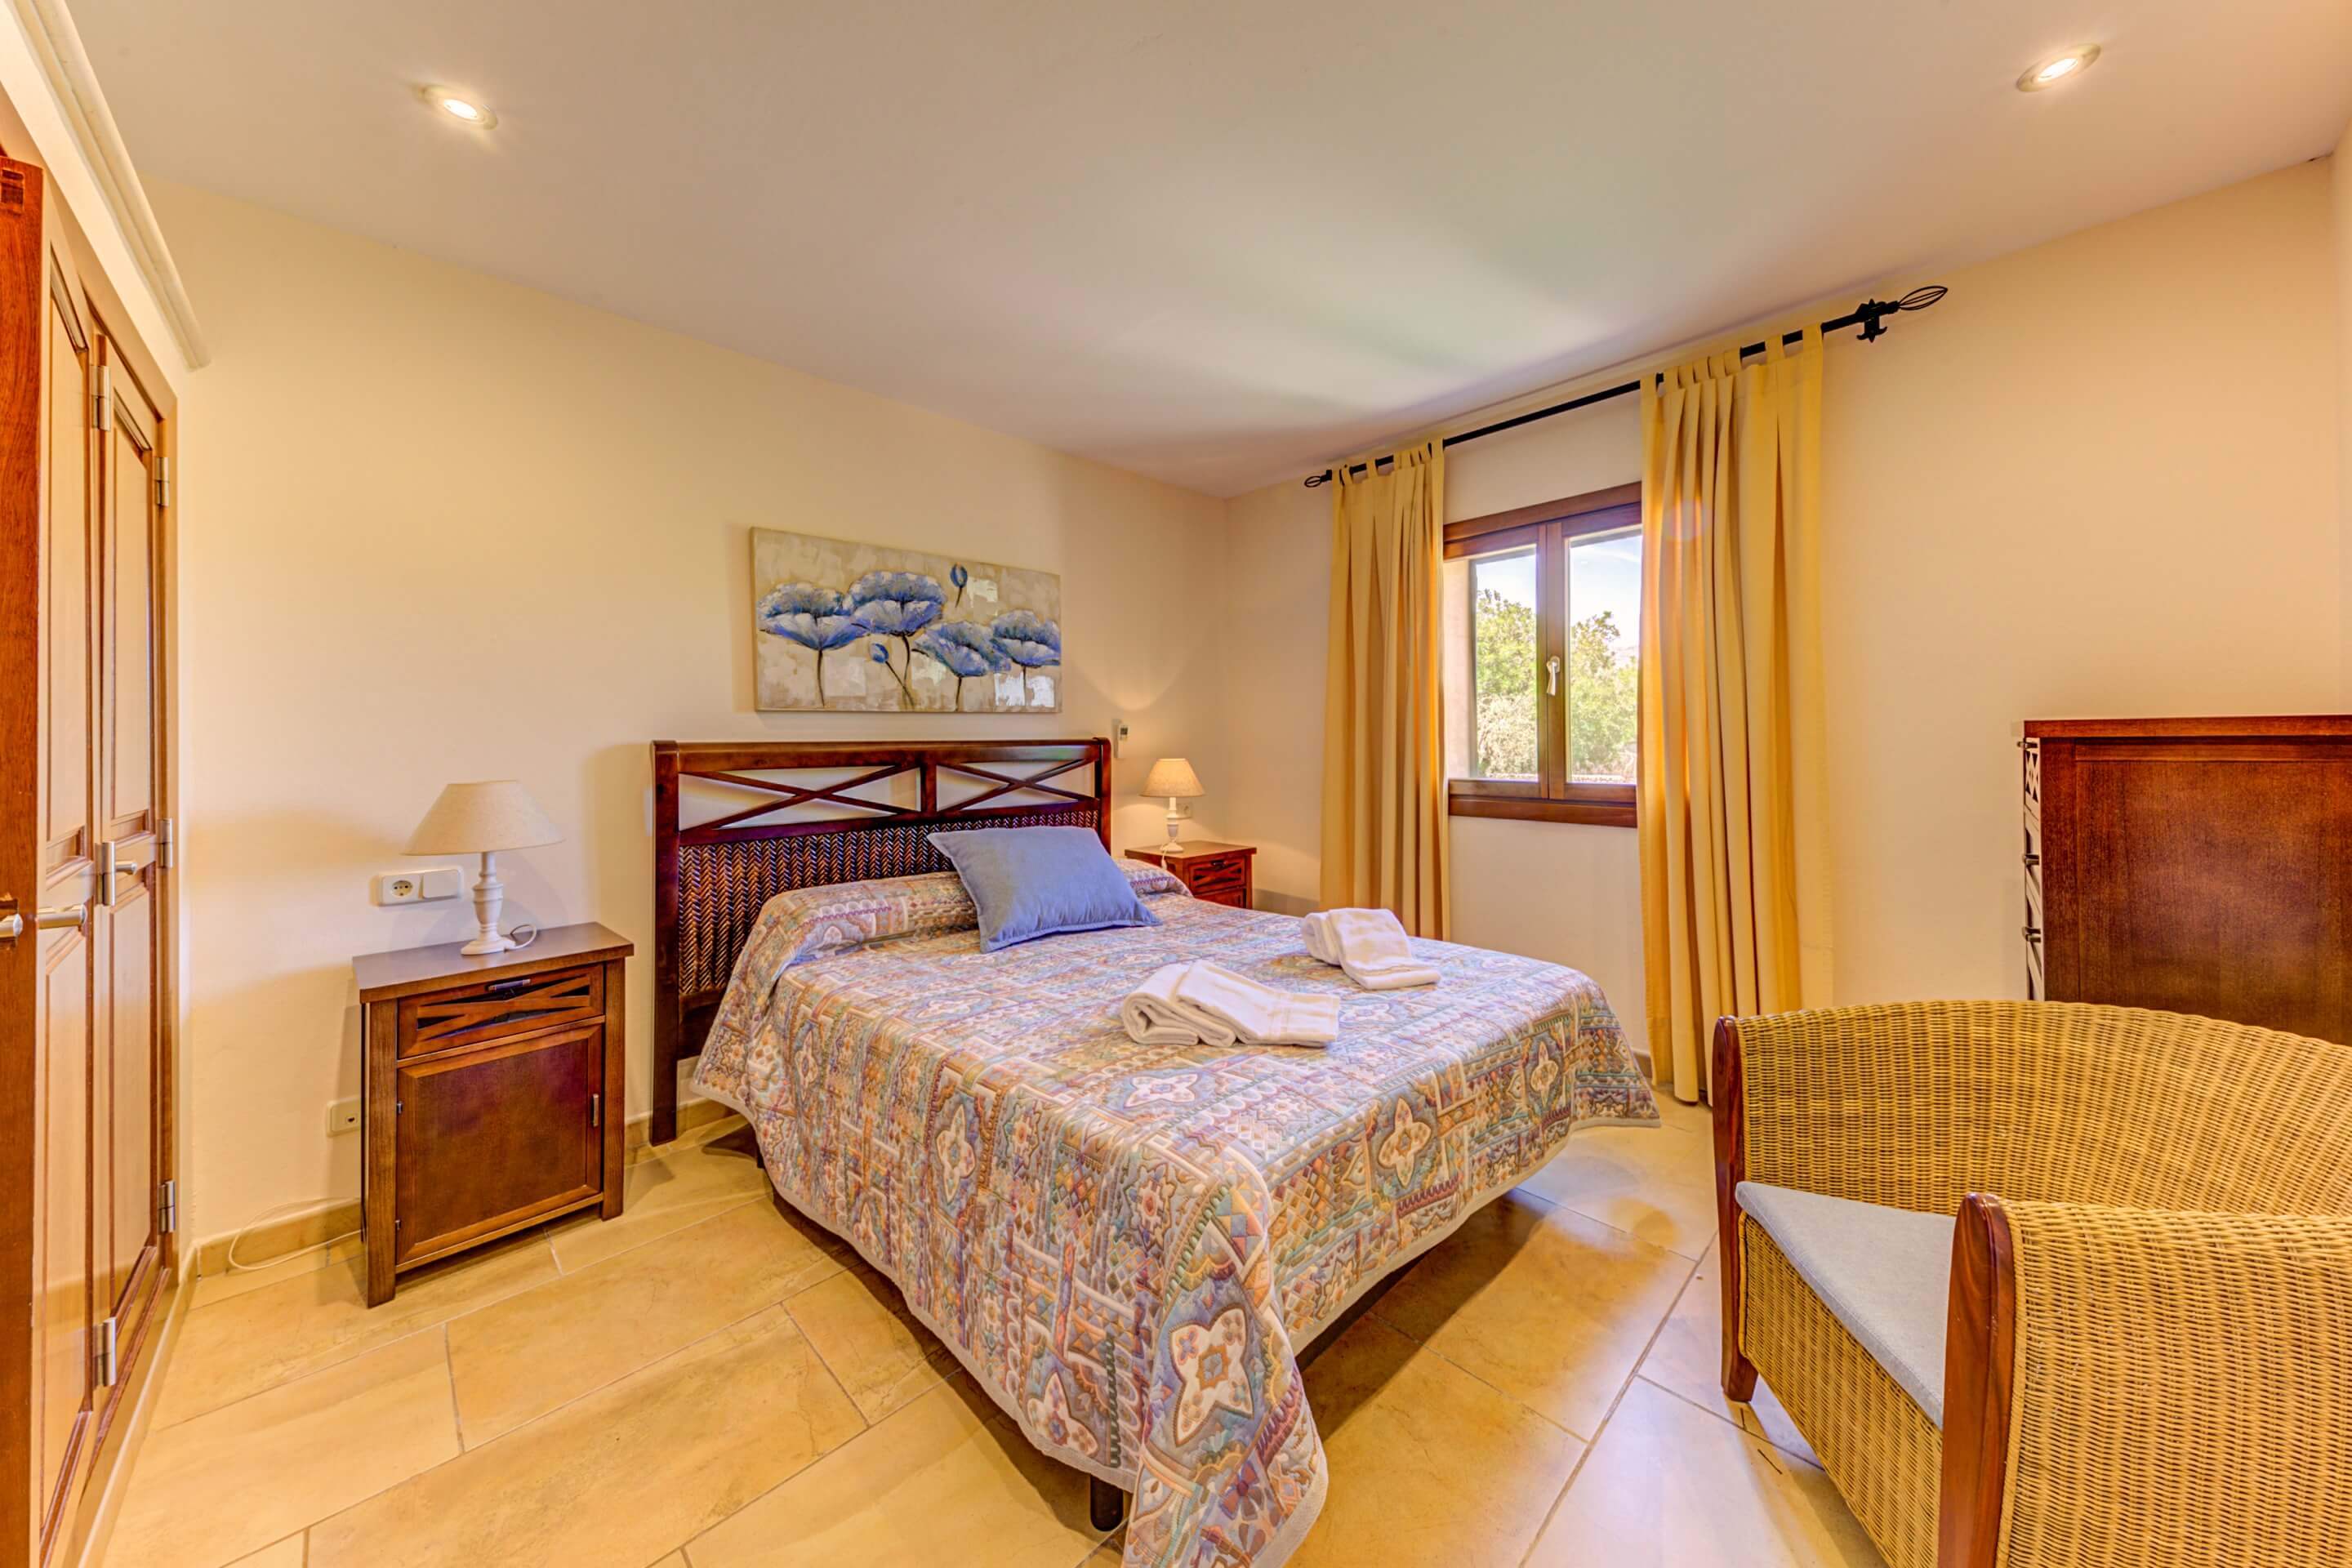 Pontarro, 2 bedroom villa in Pollensa & Puerto Pollensa, Majorca Photo #13